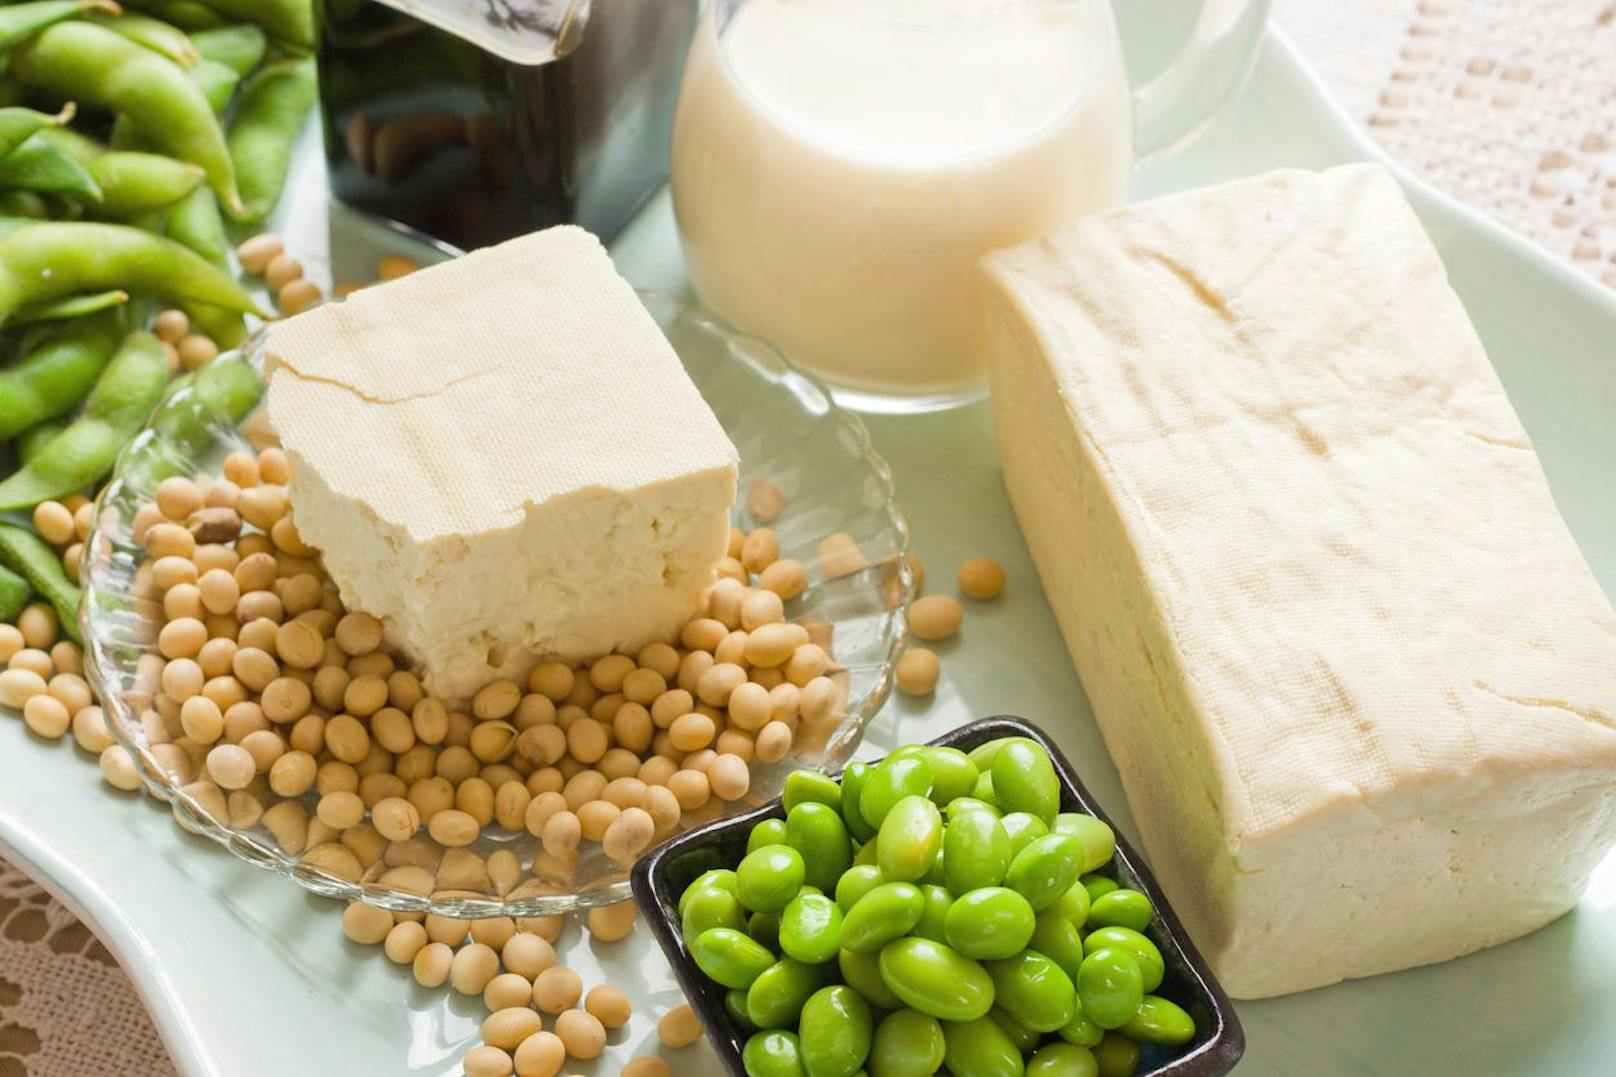 Sojaprodukte gibt es in vielen Formen: Sojabohnen, Tofu, Sojasprossen. Vor allem in der veganen Küche kommen sie oft zum Einsatz.